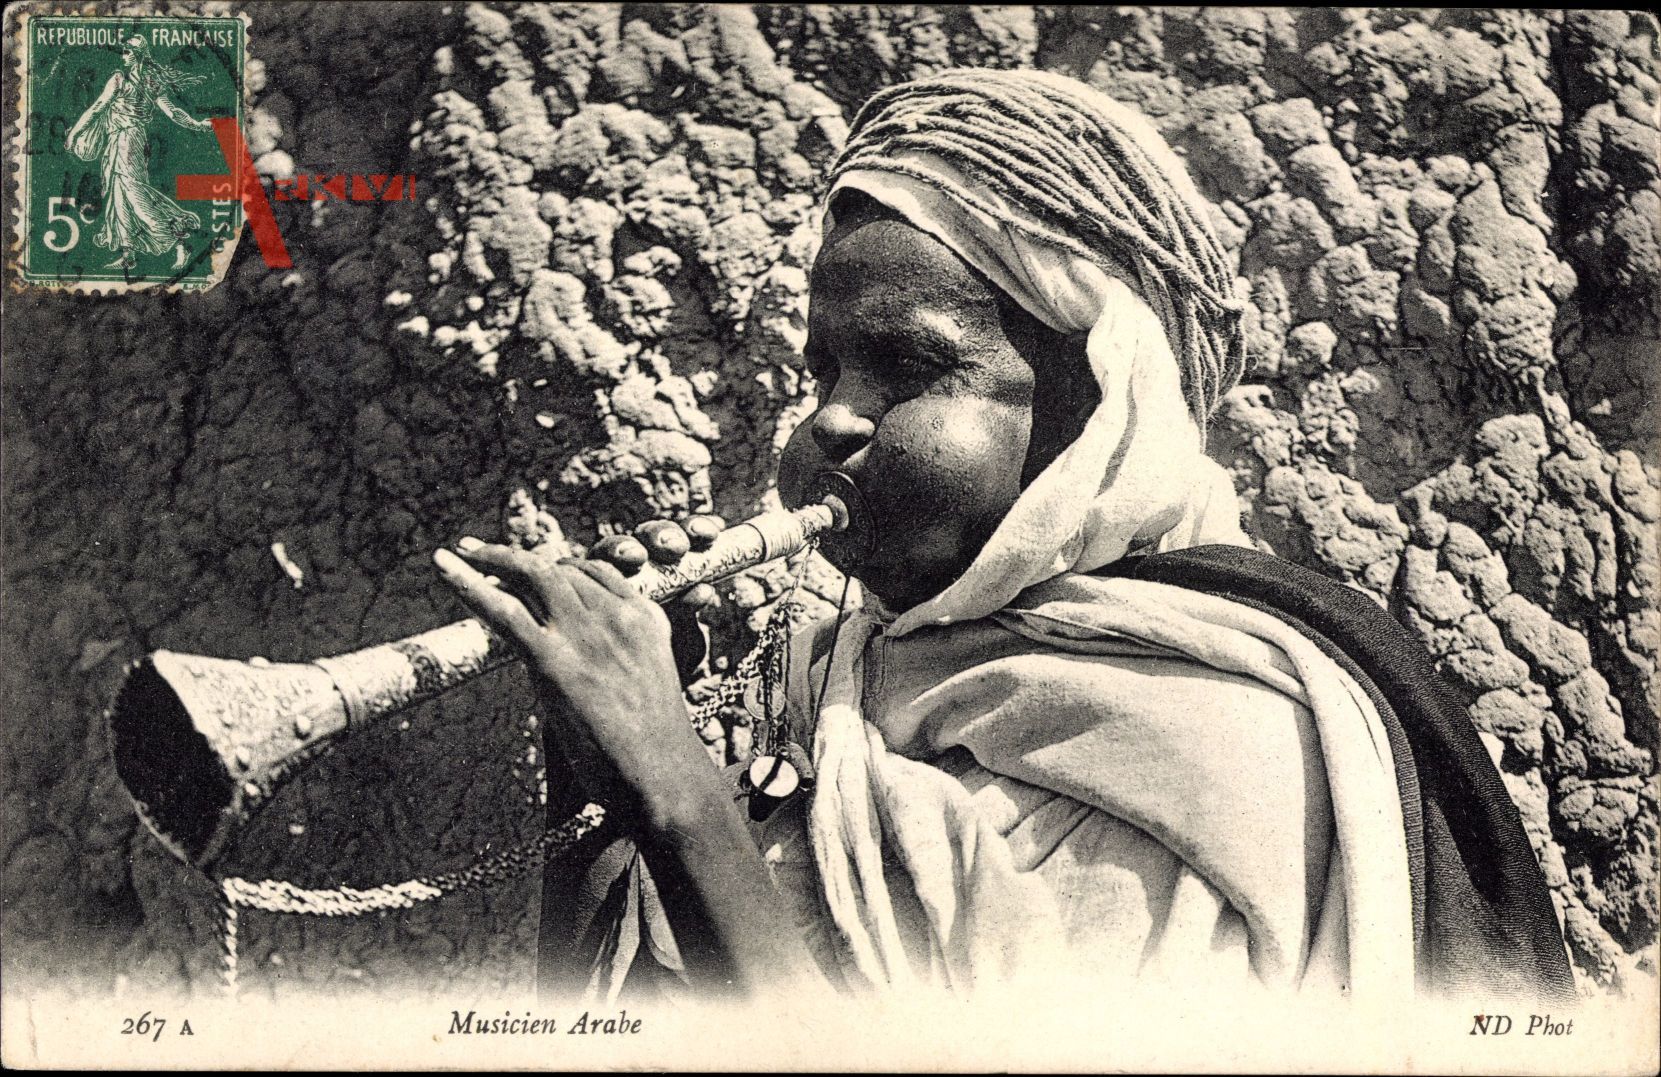 Maghreb, Musicien Arabe, Araber spielt auf einer Flöte